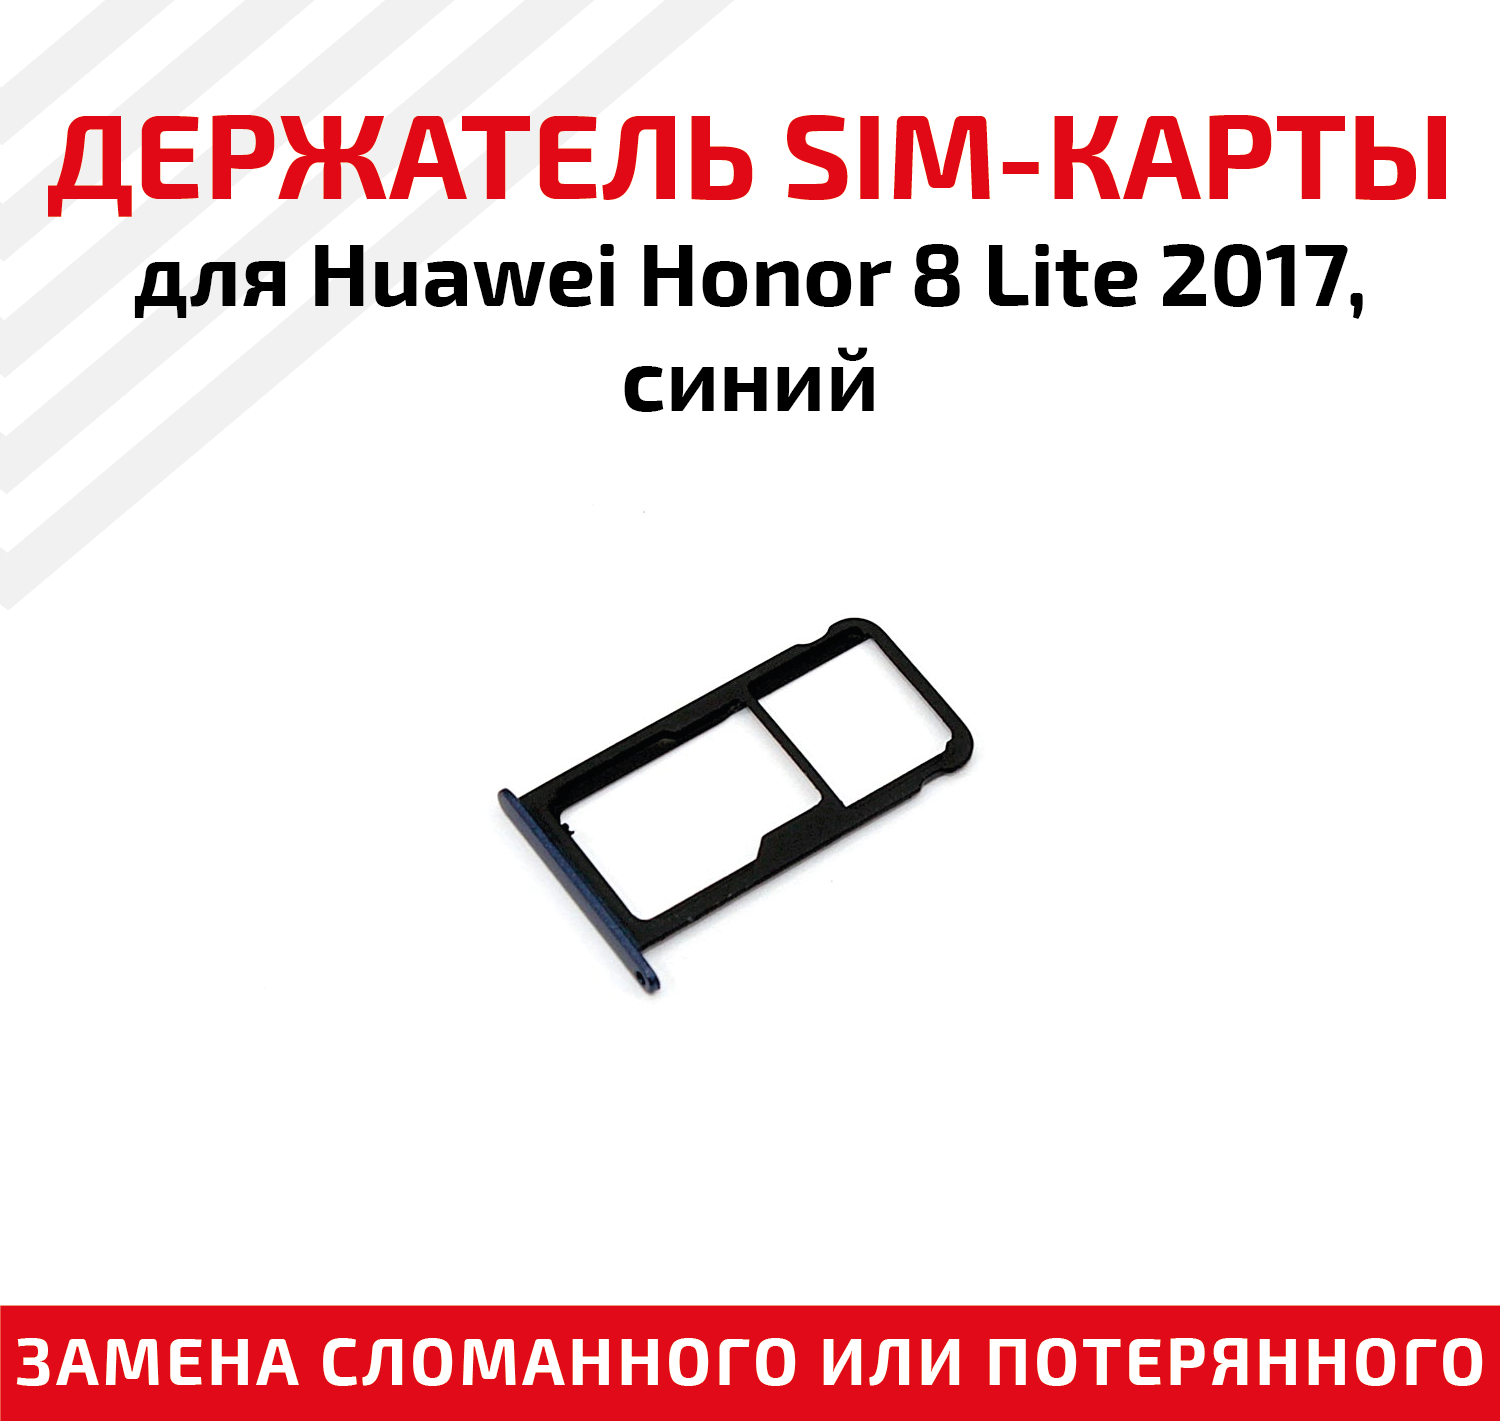 Лоток (держатель контейнер слот) SIM-карты для мобильного телефона (смартфона) Huawei Honor 8 Lite 2017 синий